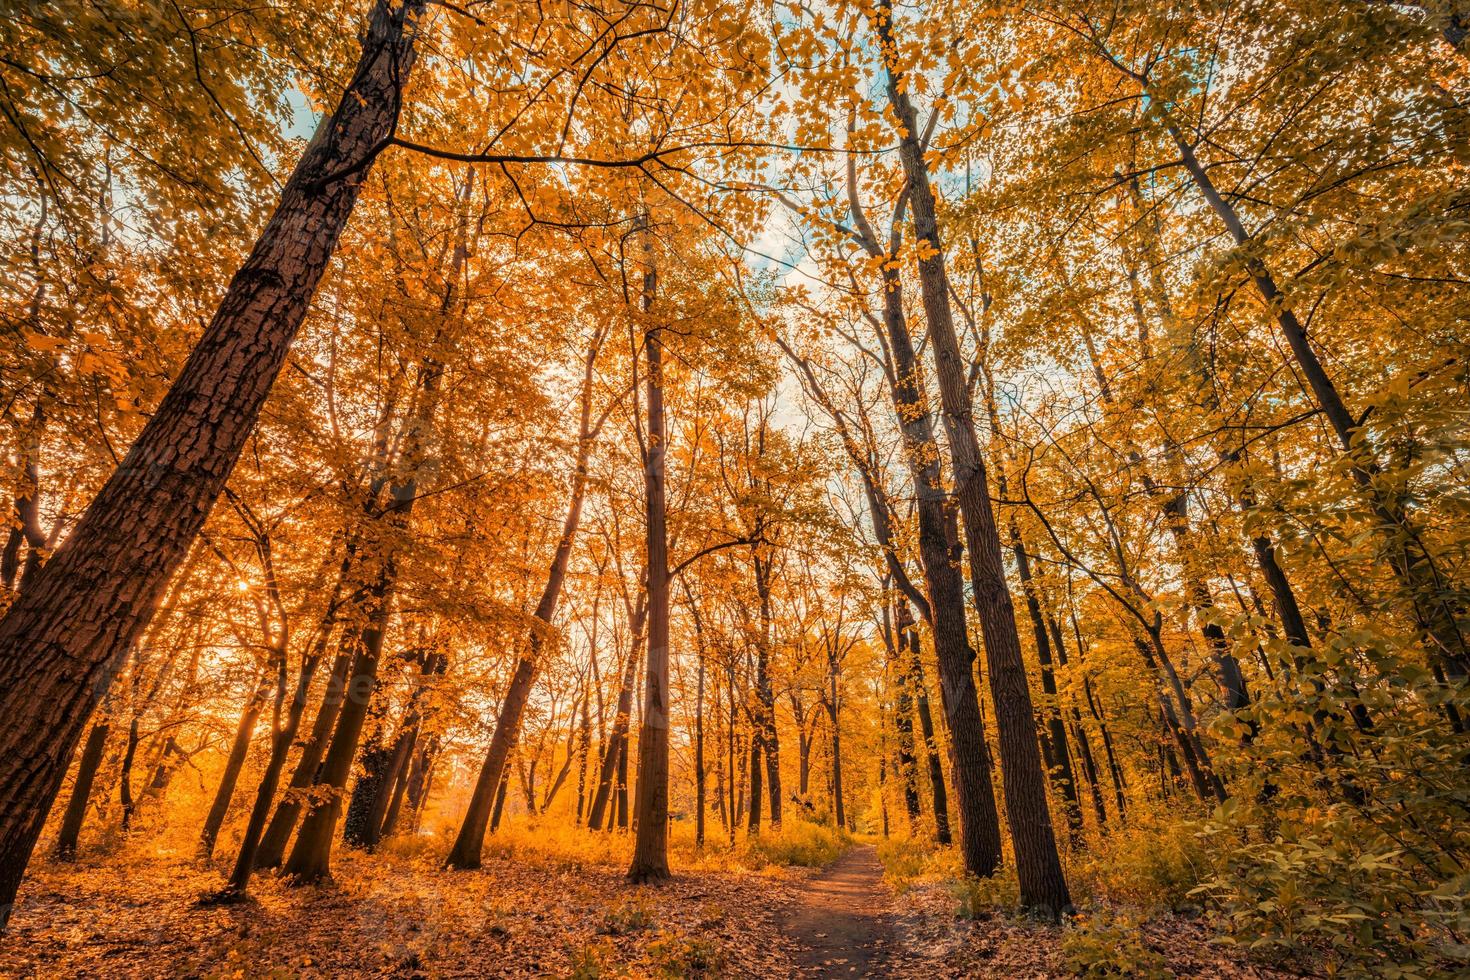 increíble paisaje de otoño. naturaleza forestal panorámica. mañana vívida en un bosque colorido con rayos de sol árboles de hojas doradas naranjas. puesta de sol idílica, camino escénico de fantasía de ensueño. hermoso sendero del parque de otoño foto